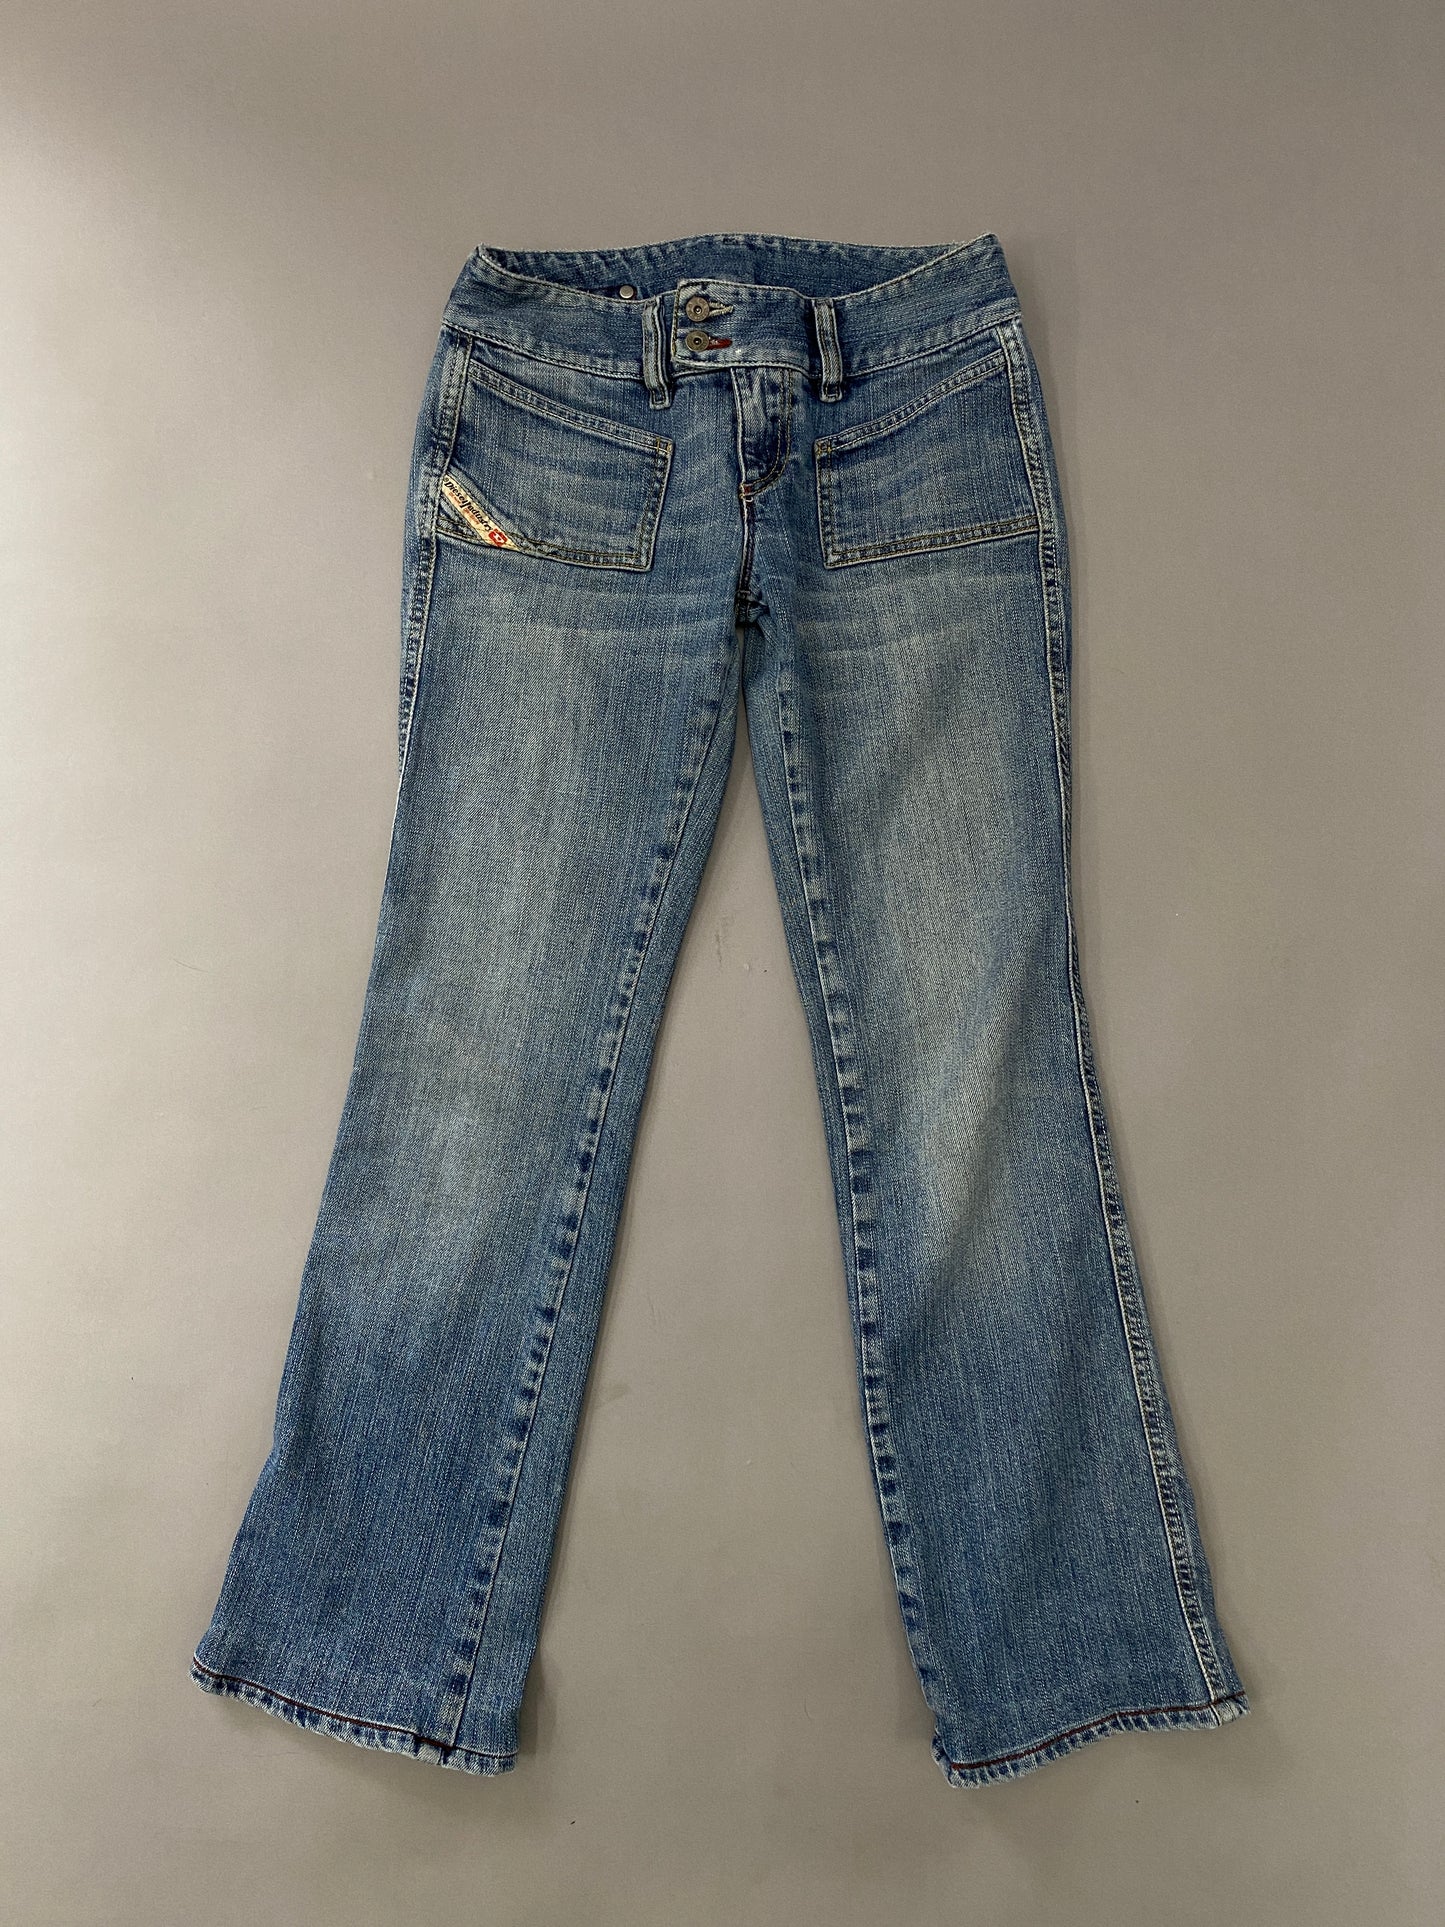 Jeans Diesel Vintage - 27